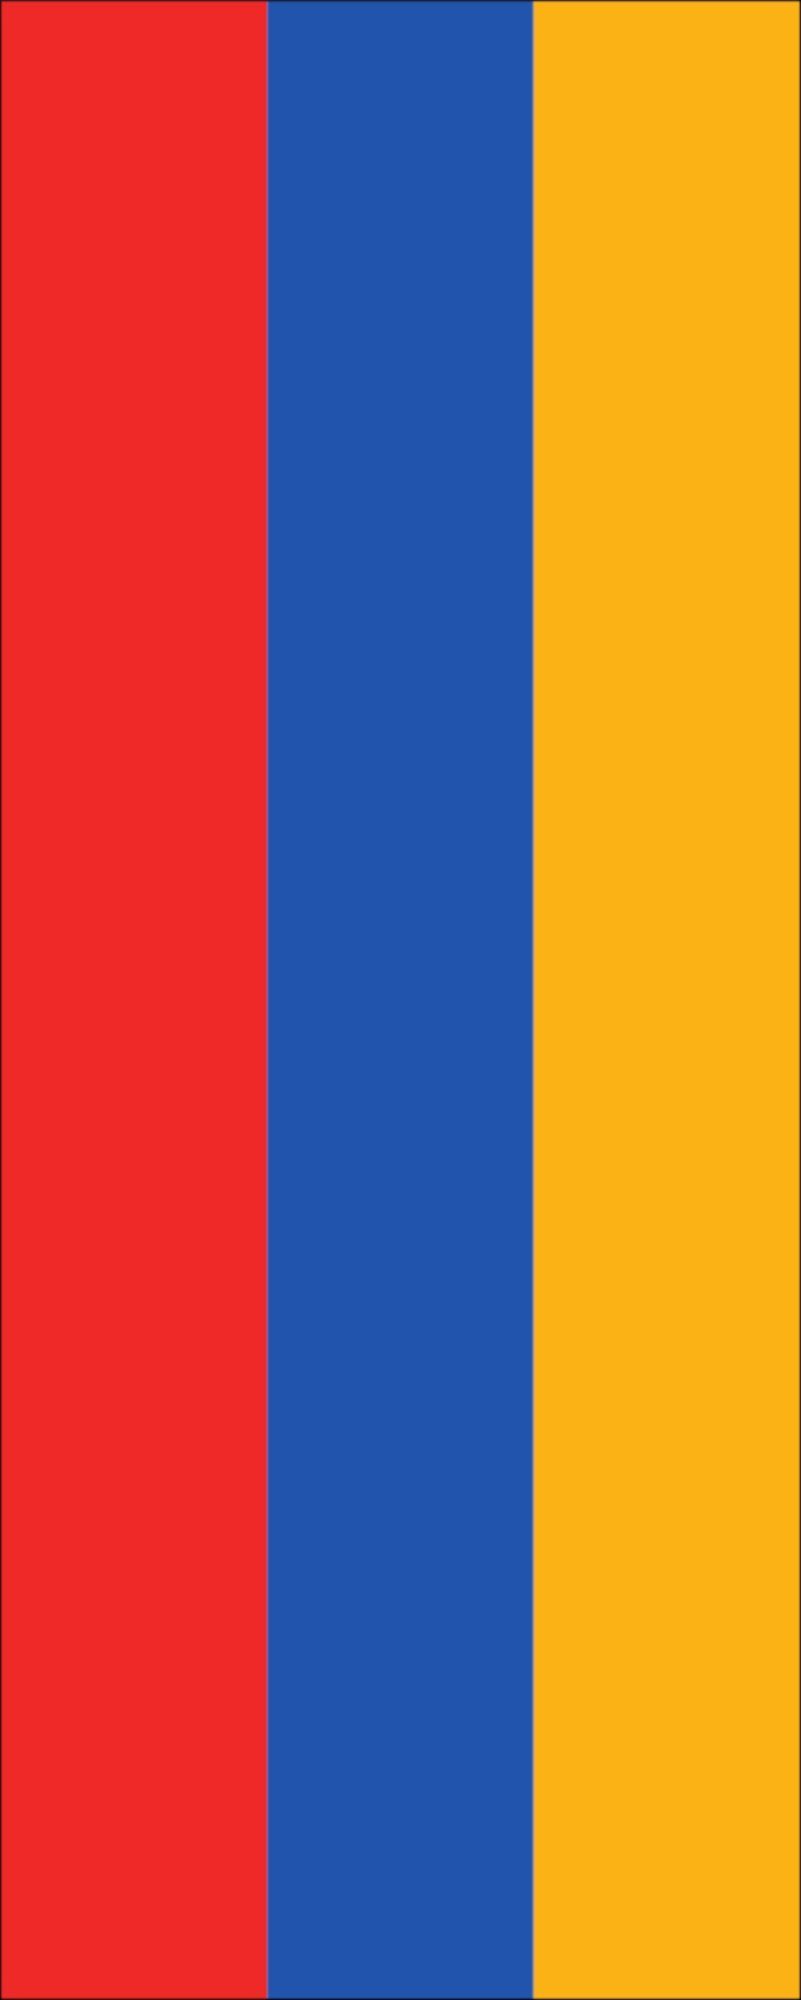 flaggenmeer g/m² Hochformat 160 Armenien Flagge